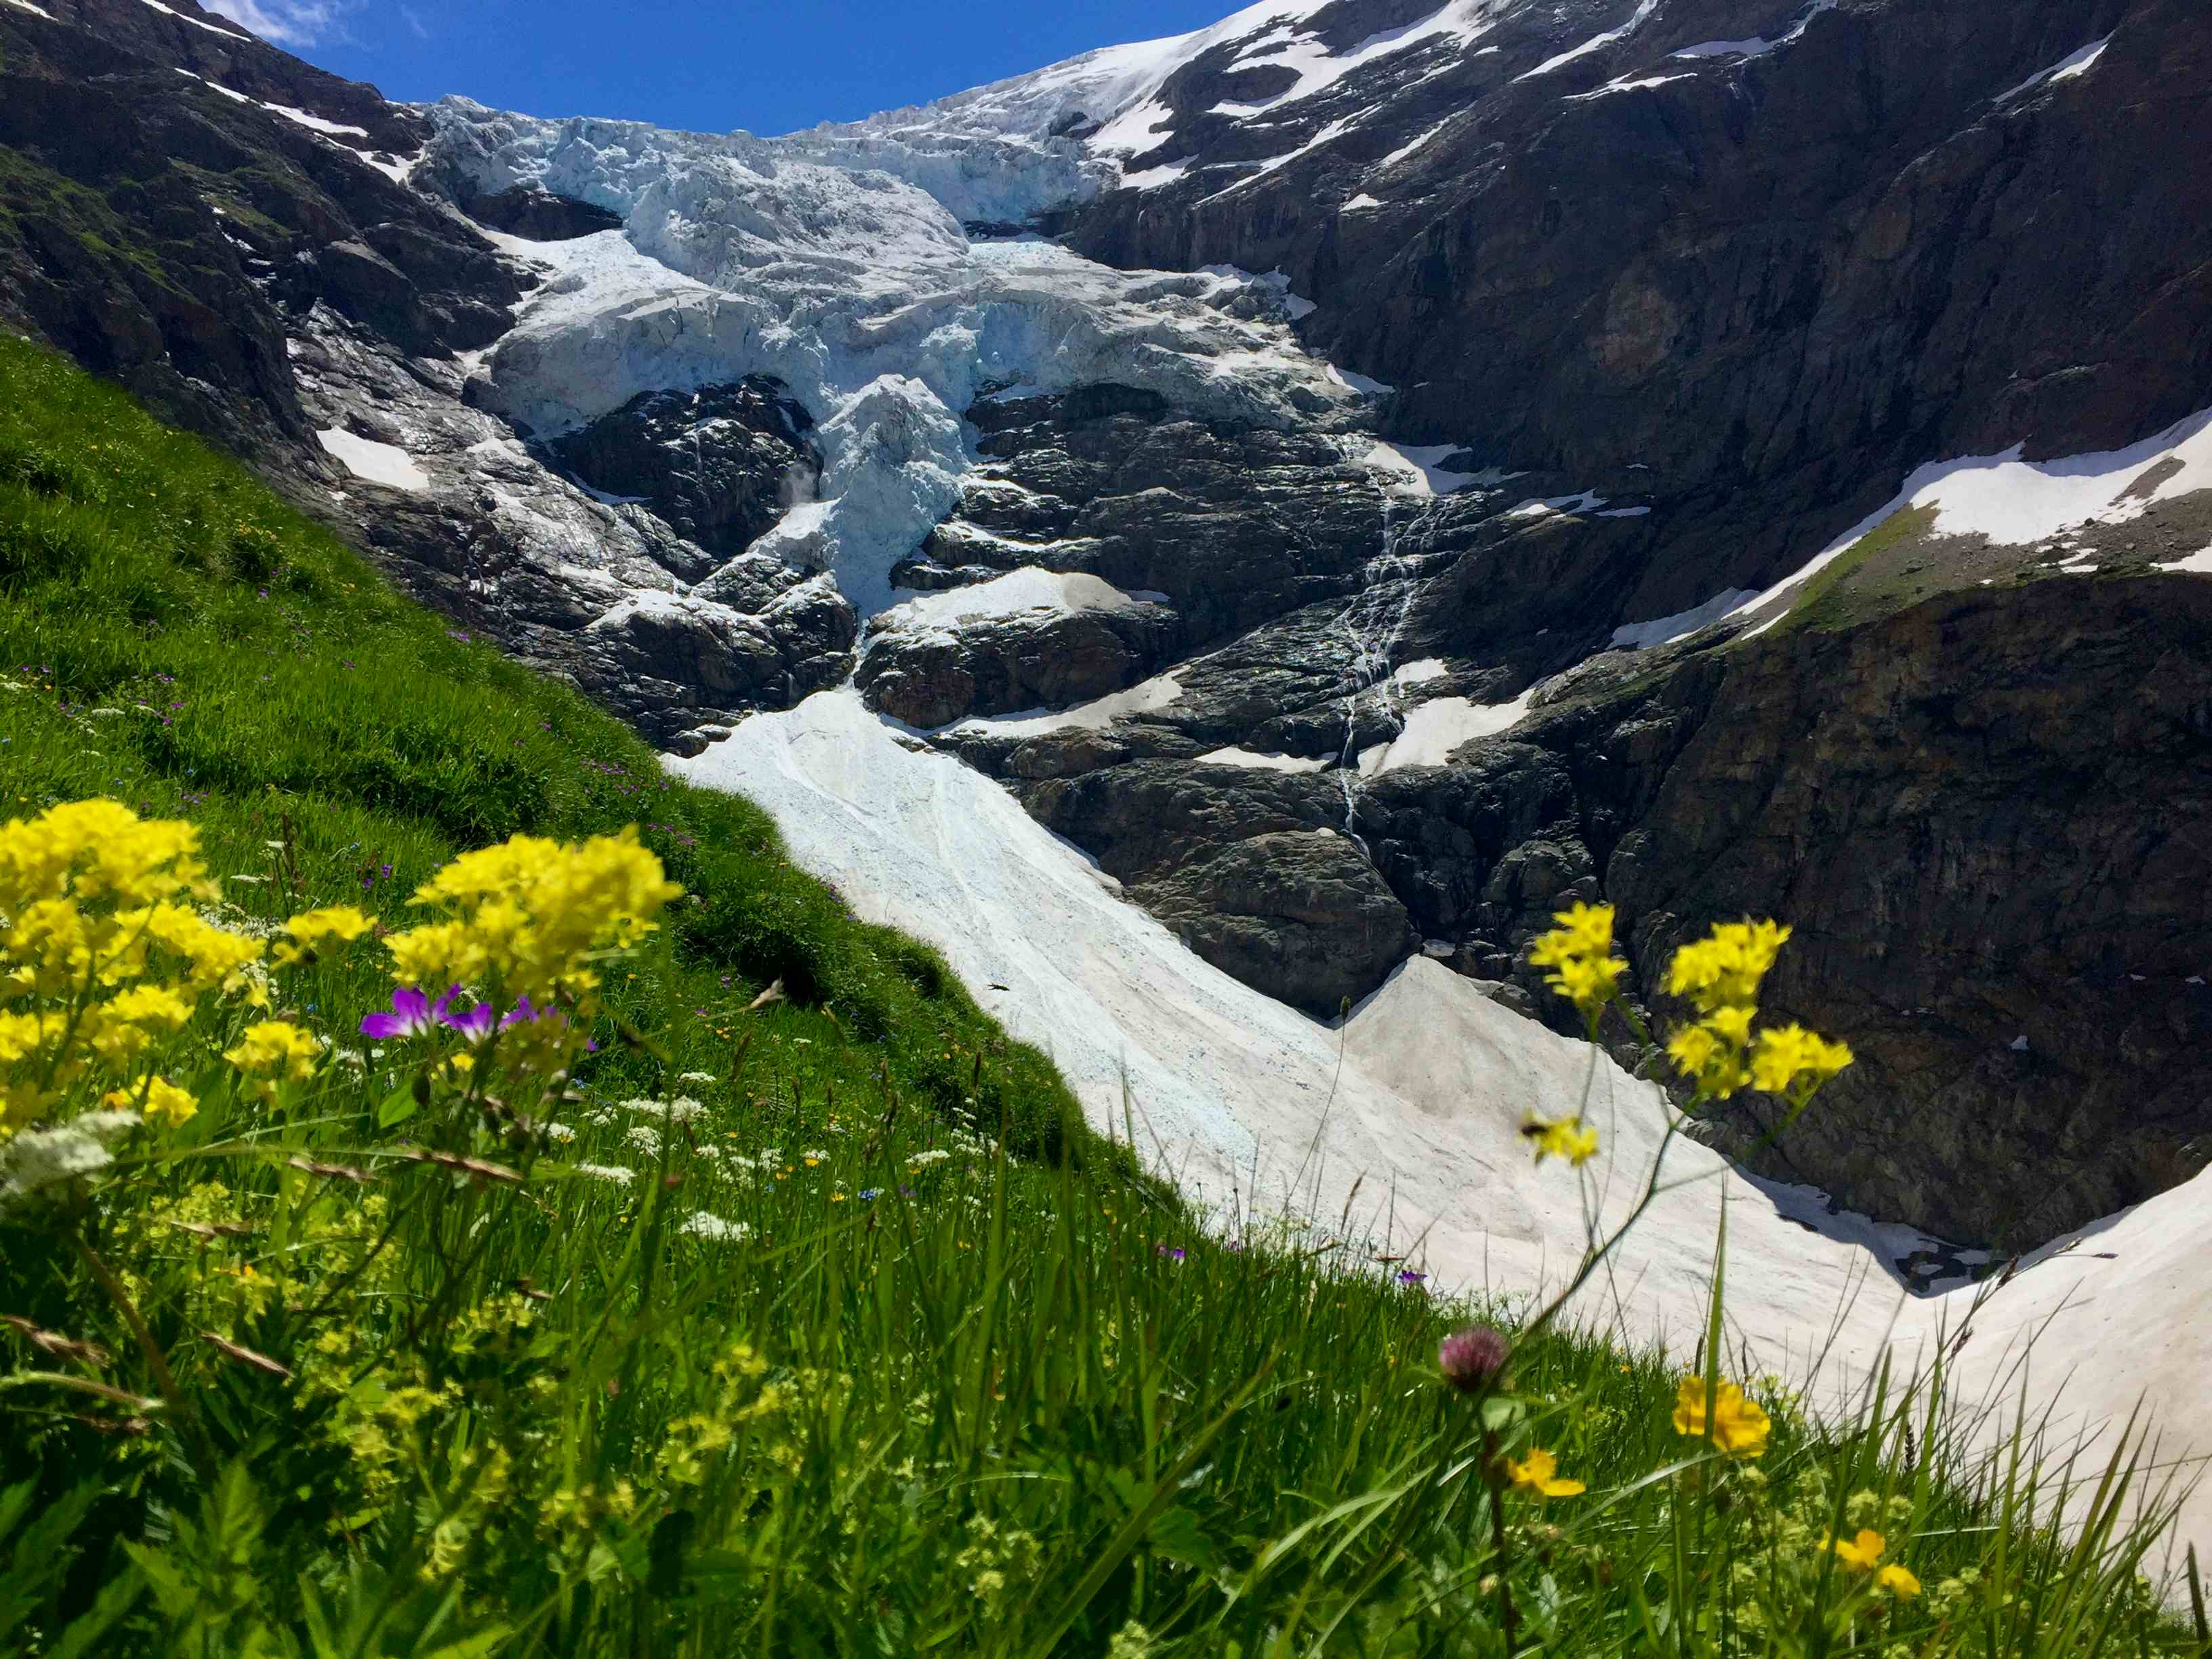 Blühende Alpenwiesen und dahinter der schwindende Obere Grindelwaldgletscher